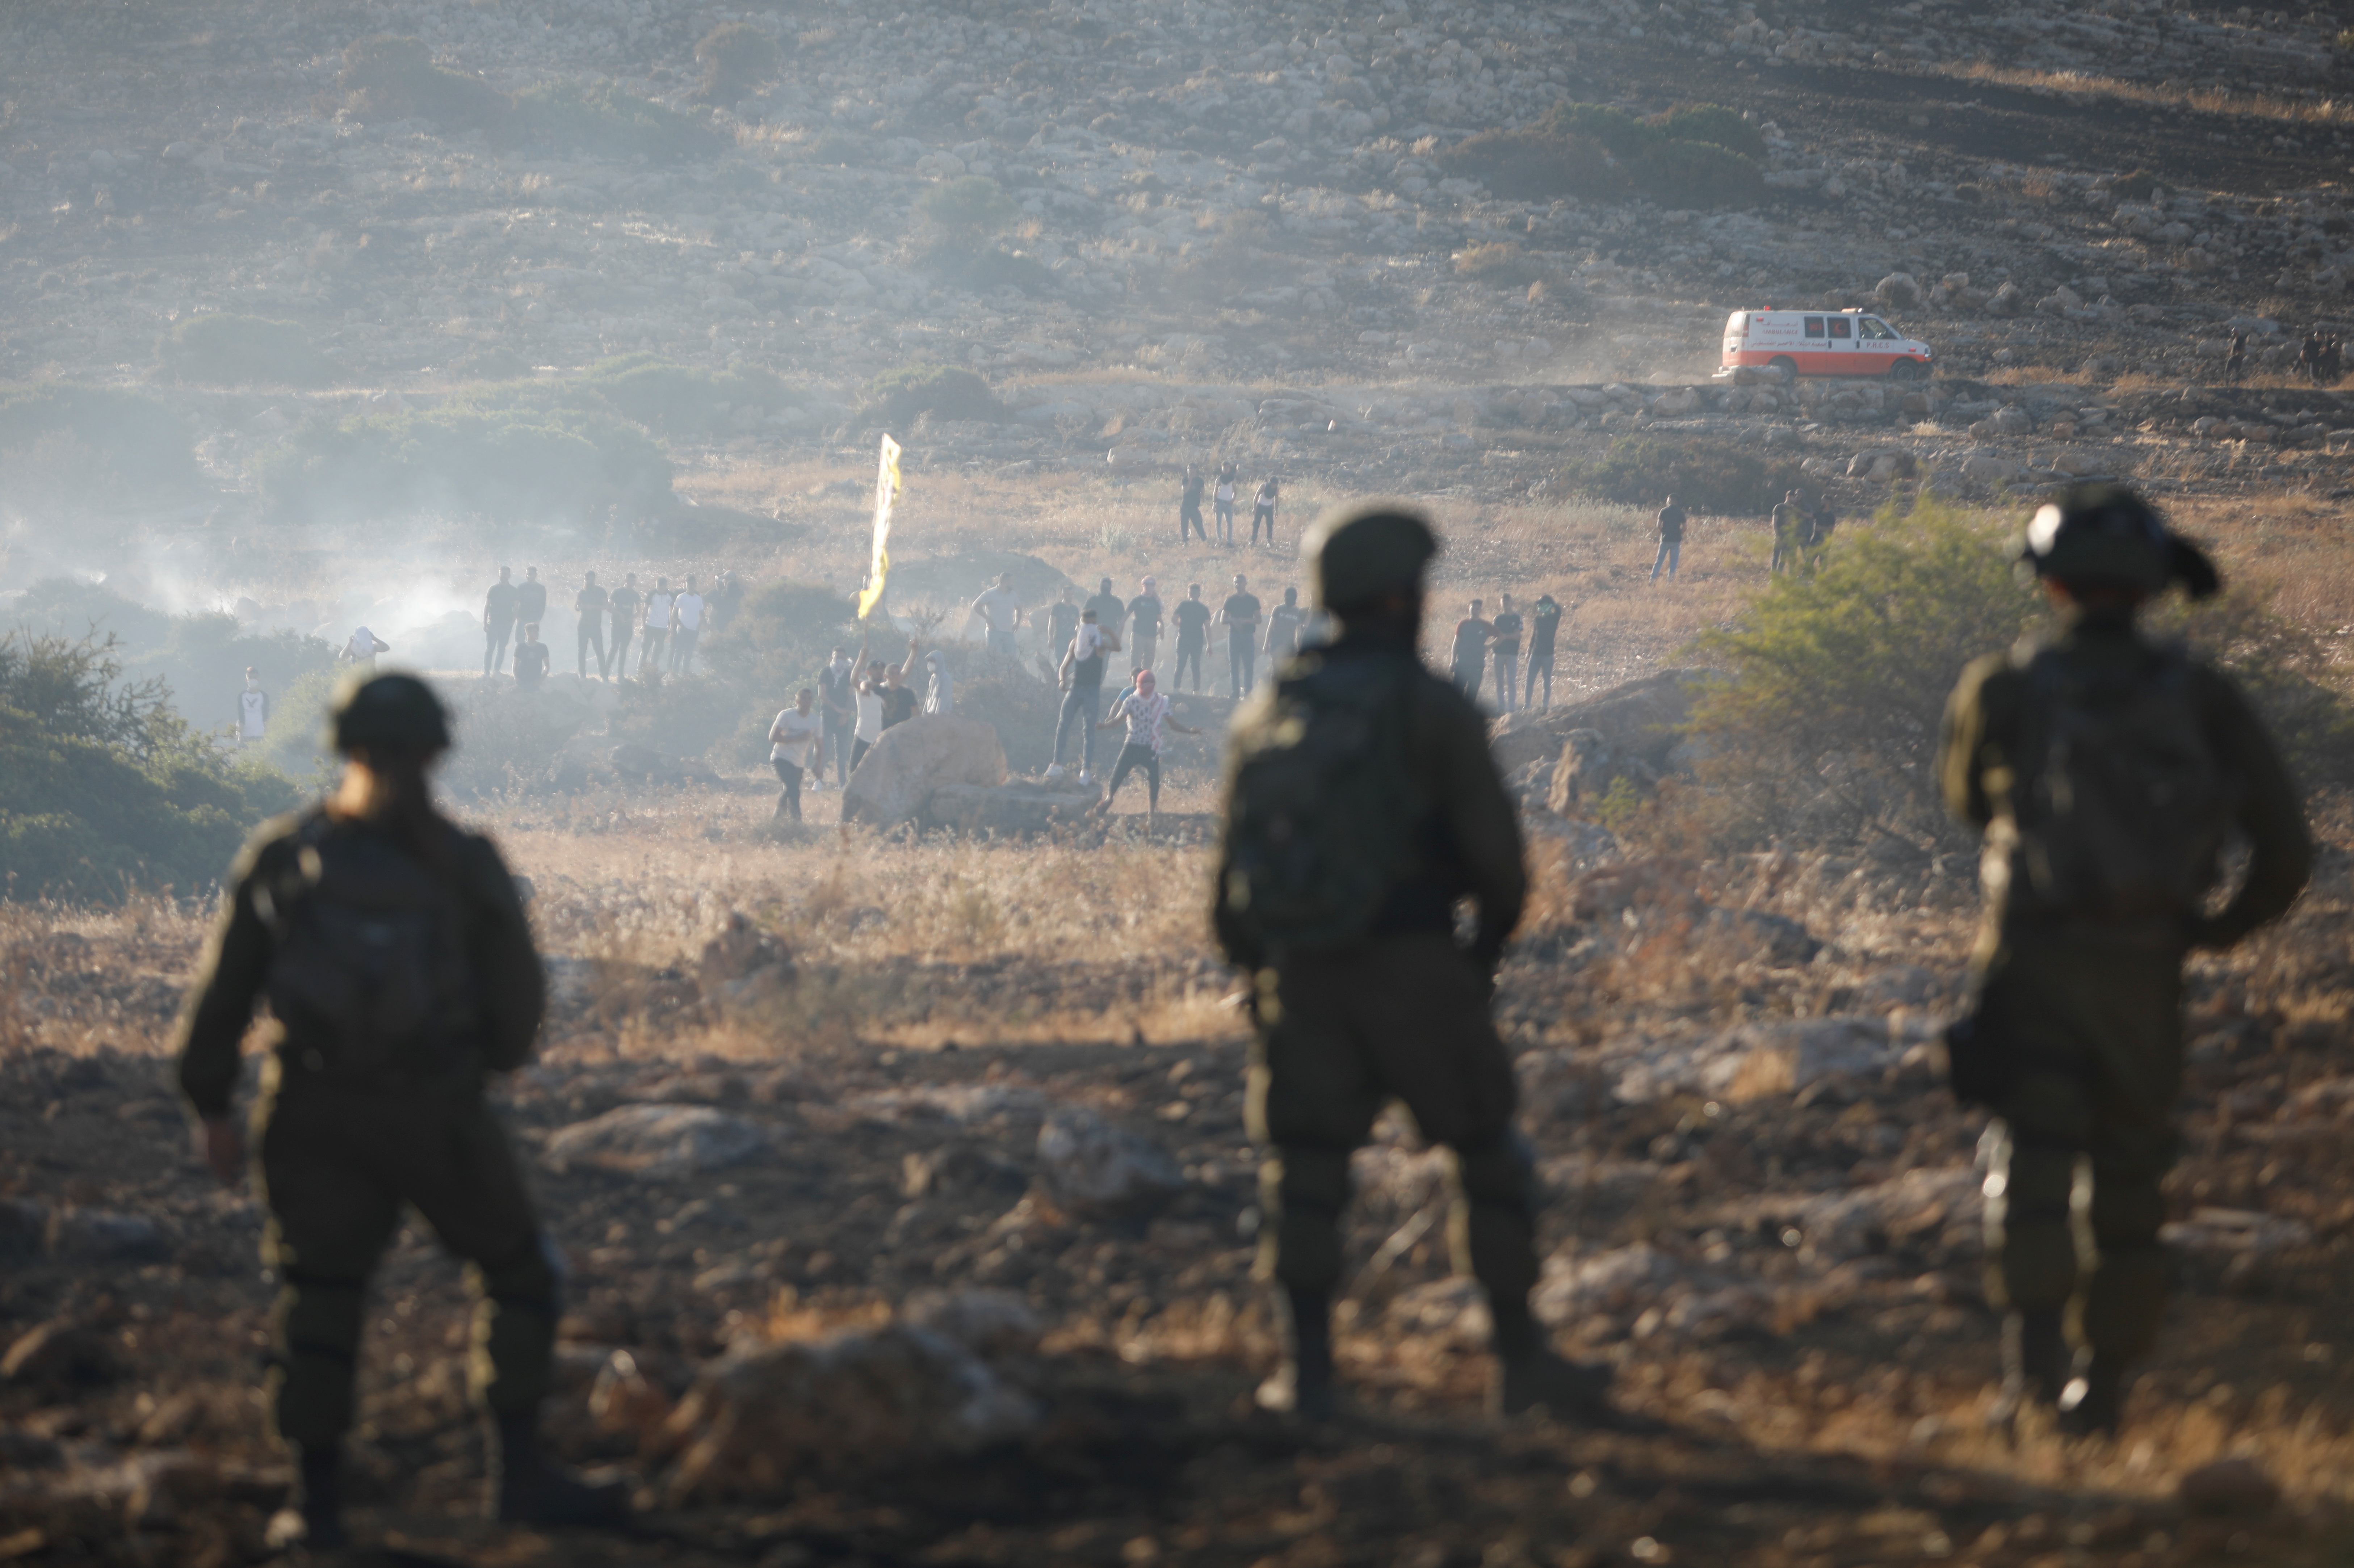 Soldados israelíes hacen guardia frente a manifestantes palestinos durante una protesta cerca de Tubas, en Cisjordania, el 15 de mayo de 2021. REUTERS/Raneen Sawafta